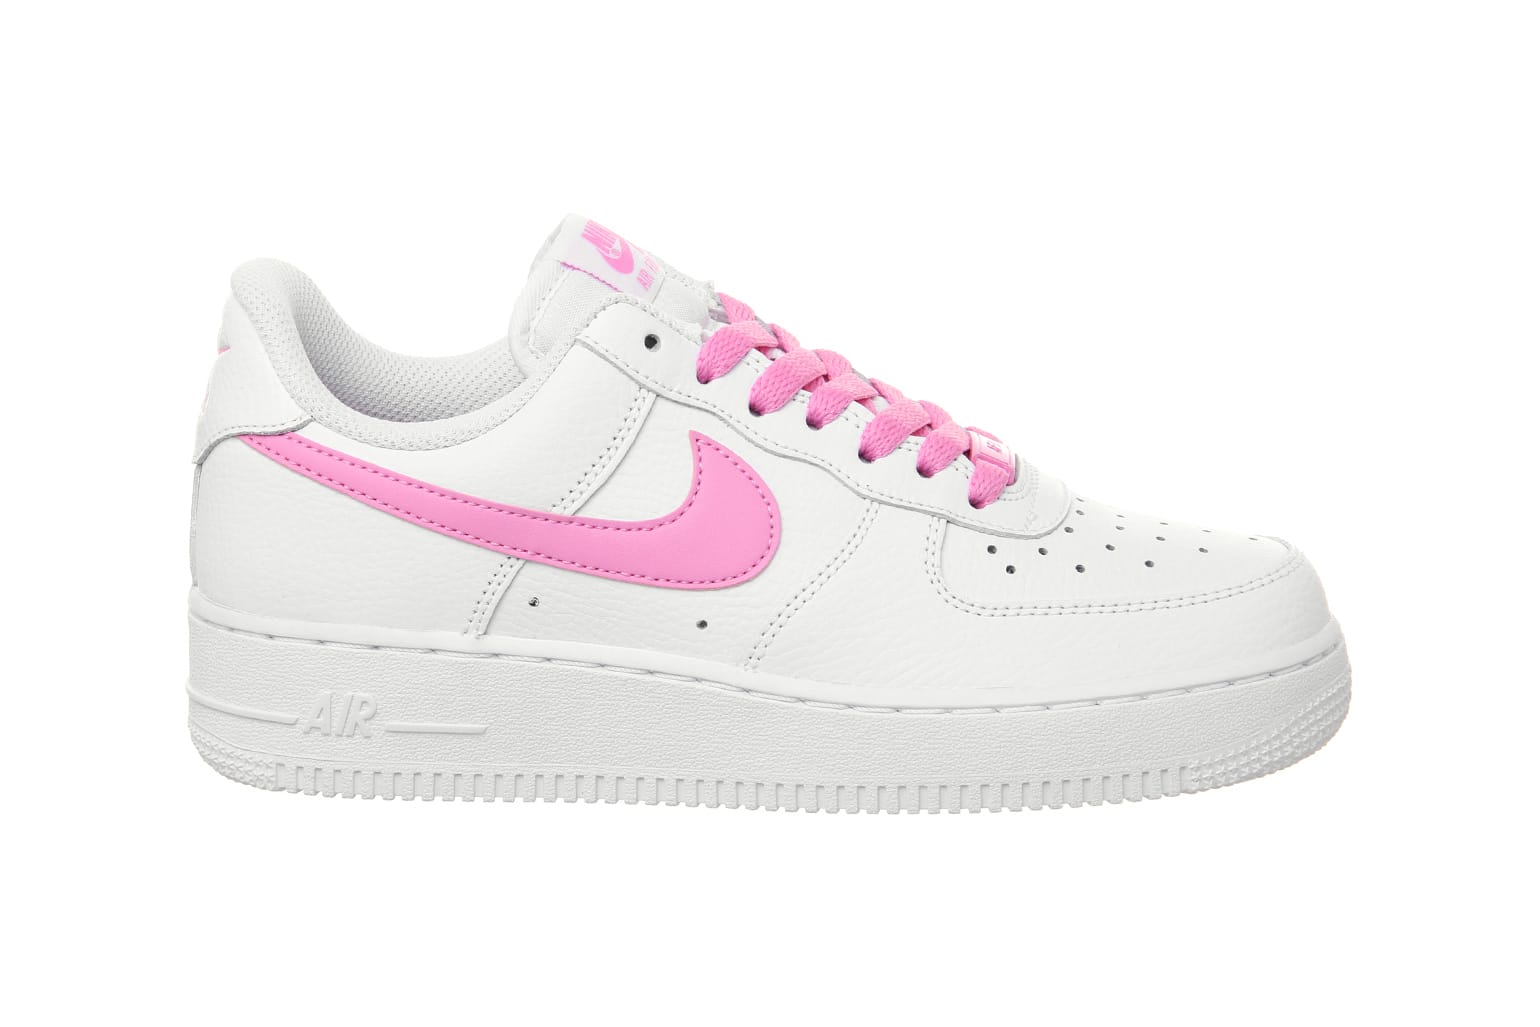 Nike Air Force 1 Psychic Pink \u0026 White 